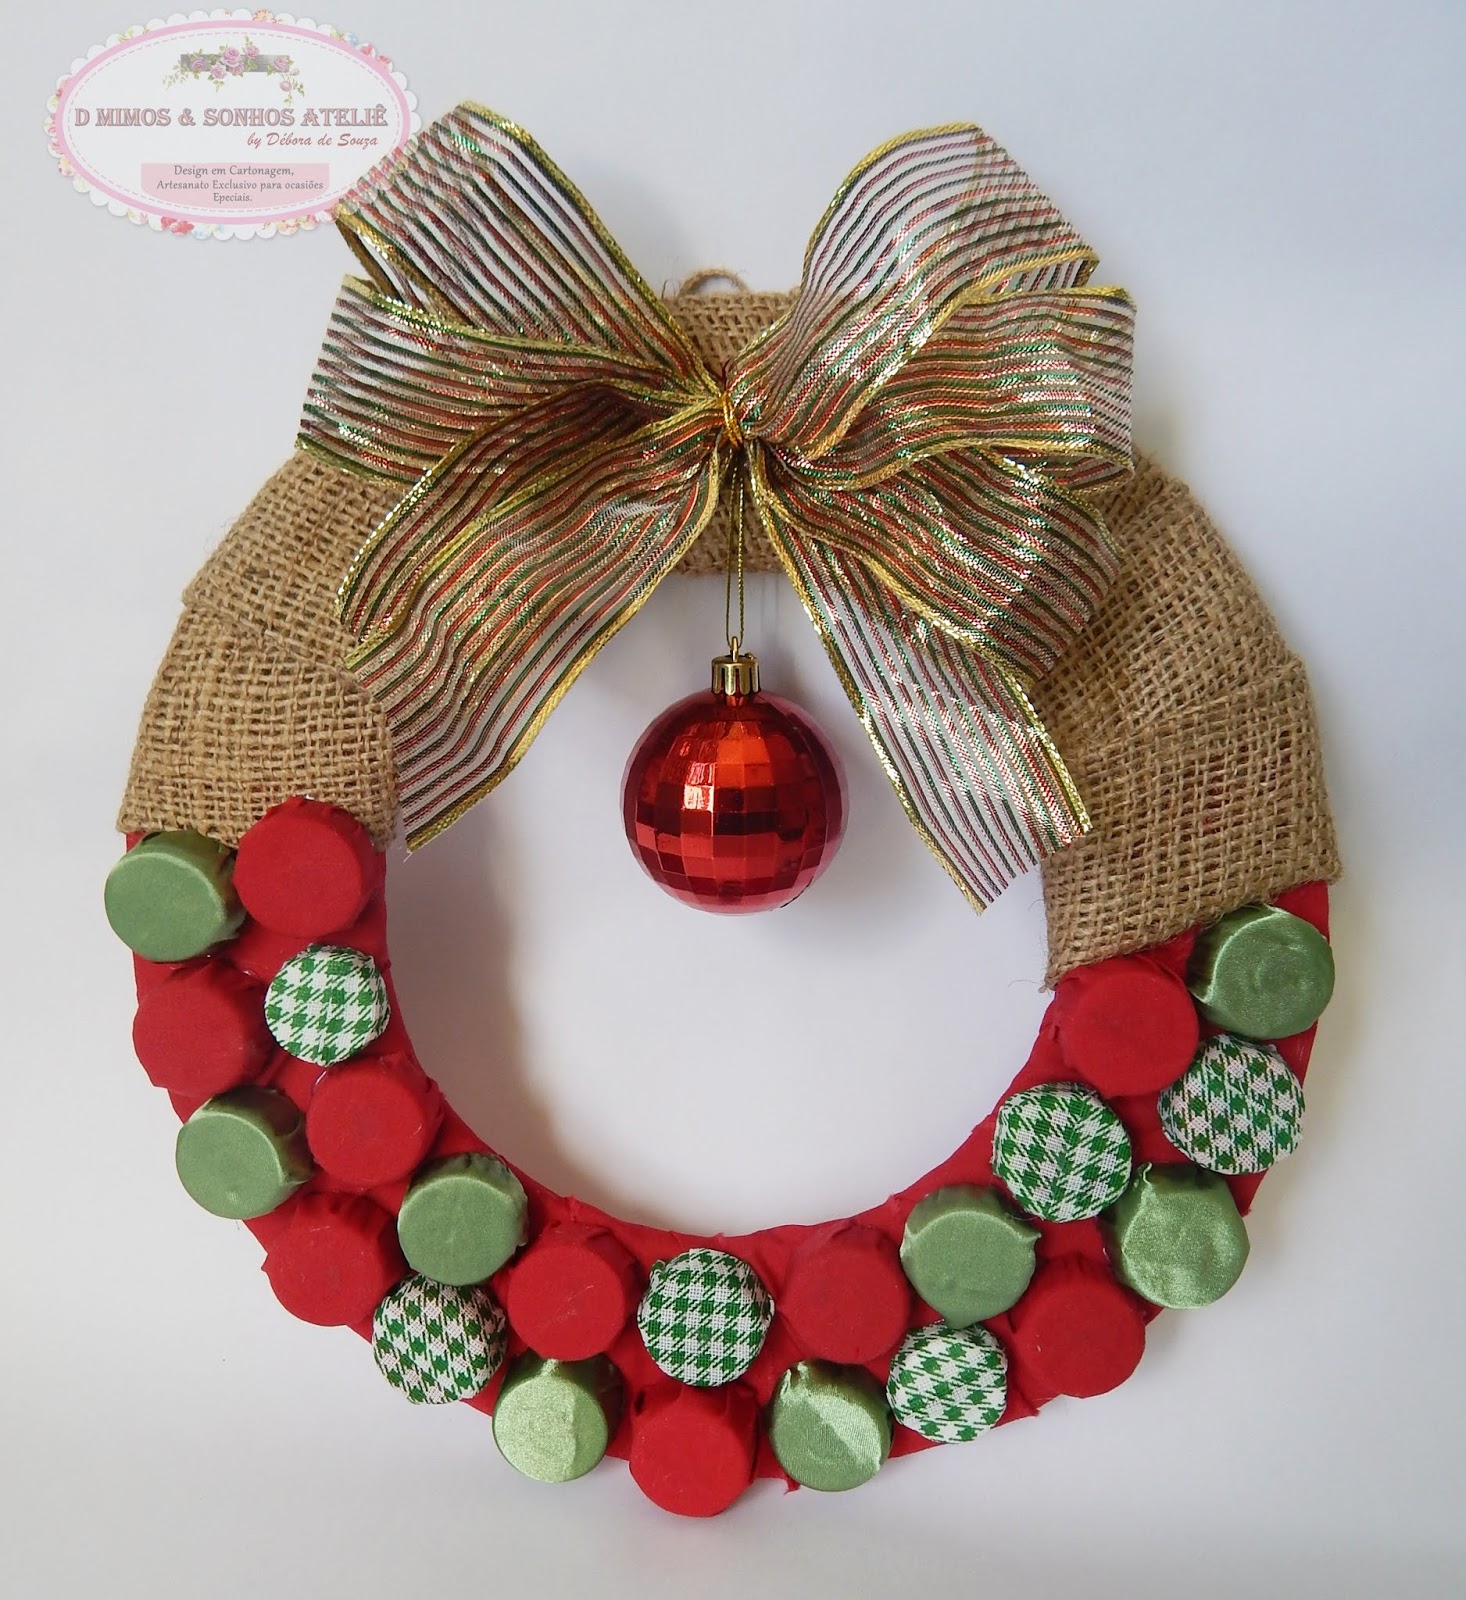 2 ideias fantásticas de Guirlanda de Natal para decorar a Casa | Artesanato  D Mimos